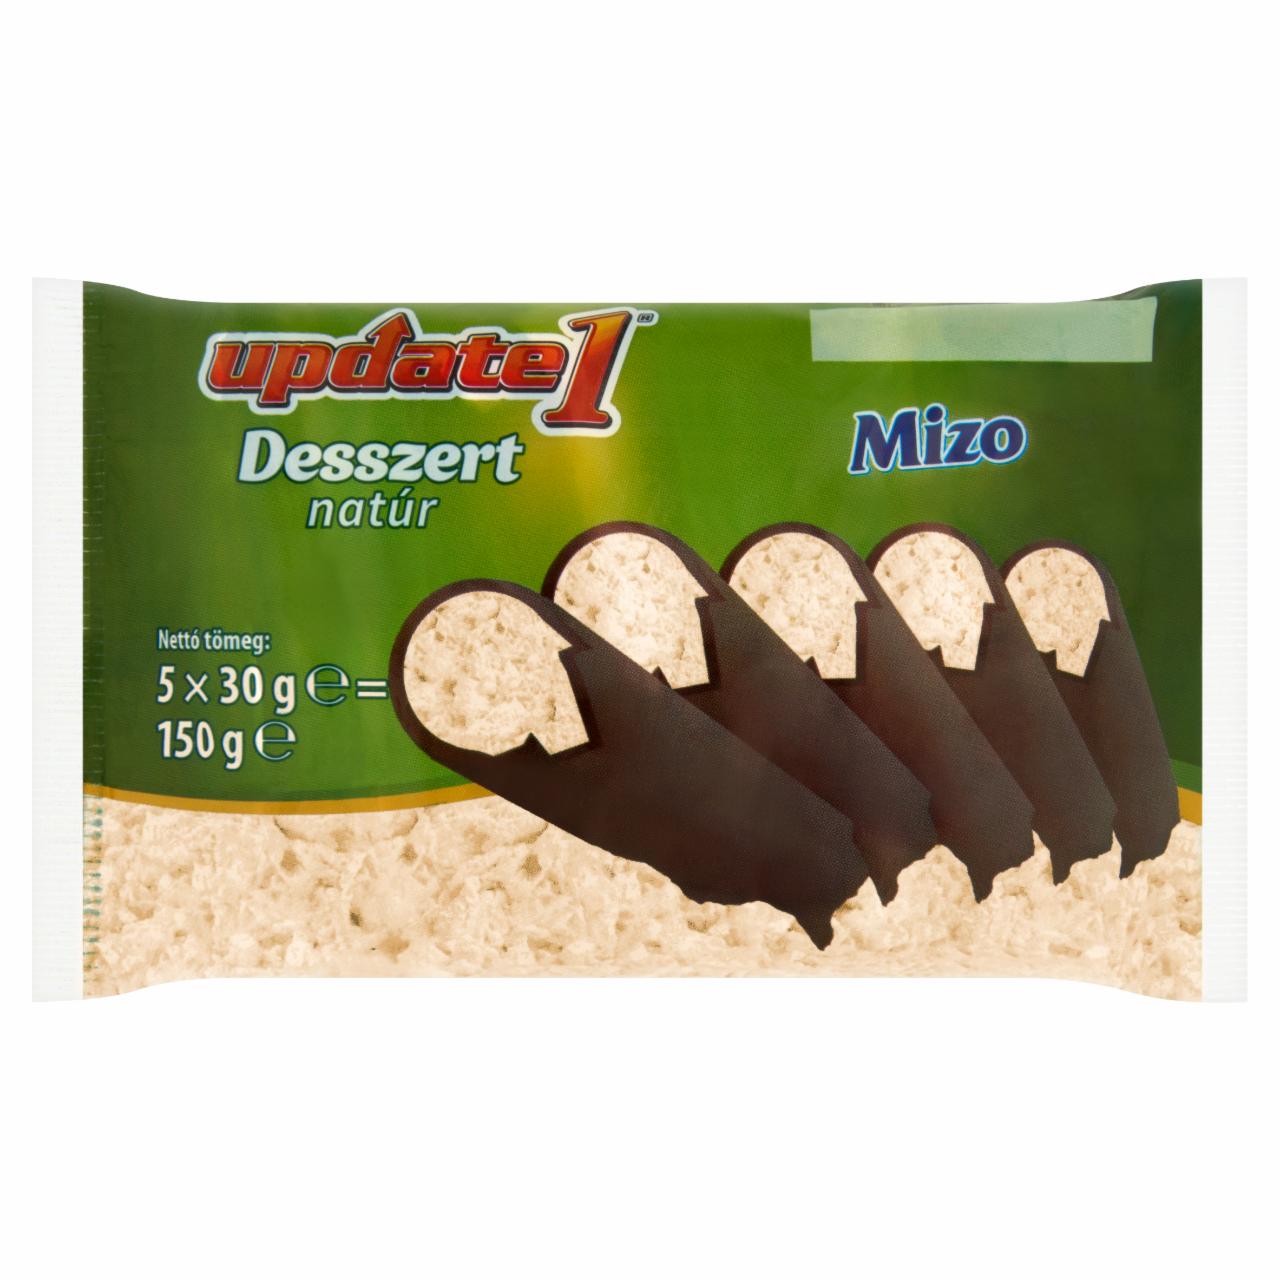 Képek - Mizo Update natúr túródesszert kakaós bevonattal, édesítőszerekkel 5 x 30 g (150 g)